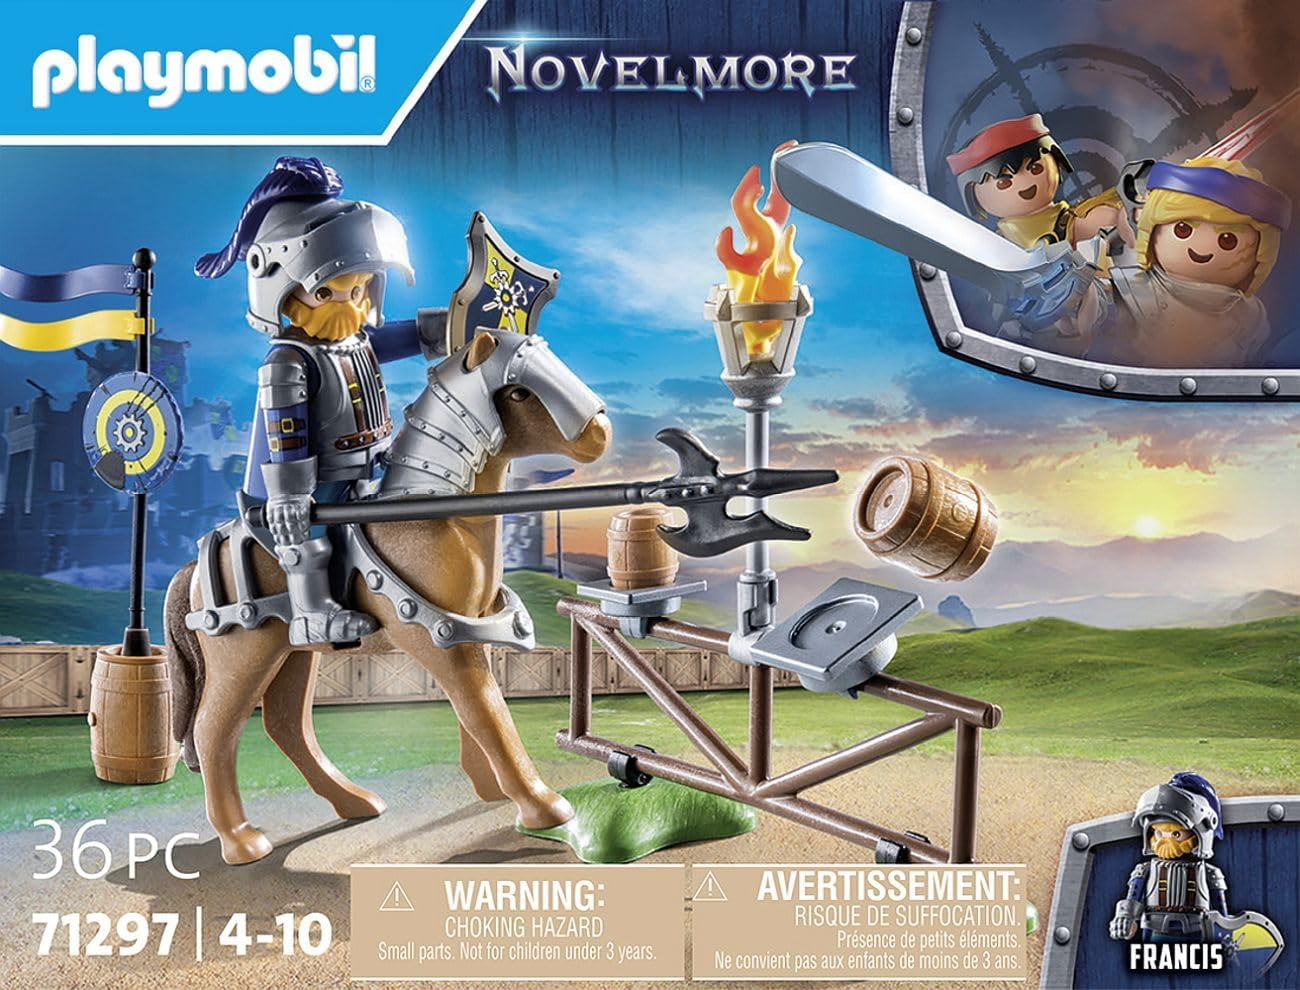 Playmobil 71297 Novelmore - Área de justa medieval, emocionante treinamento de cavaleiros com cavalo, castelo medieval e brinquedo de cavaleiros, encenação divertida e imaginativa, conjunto de jogos adequado para crianças de 4 anos ou mais